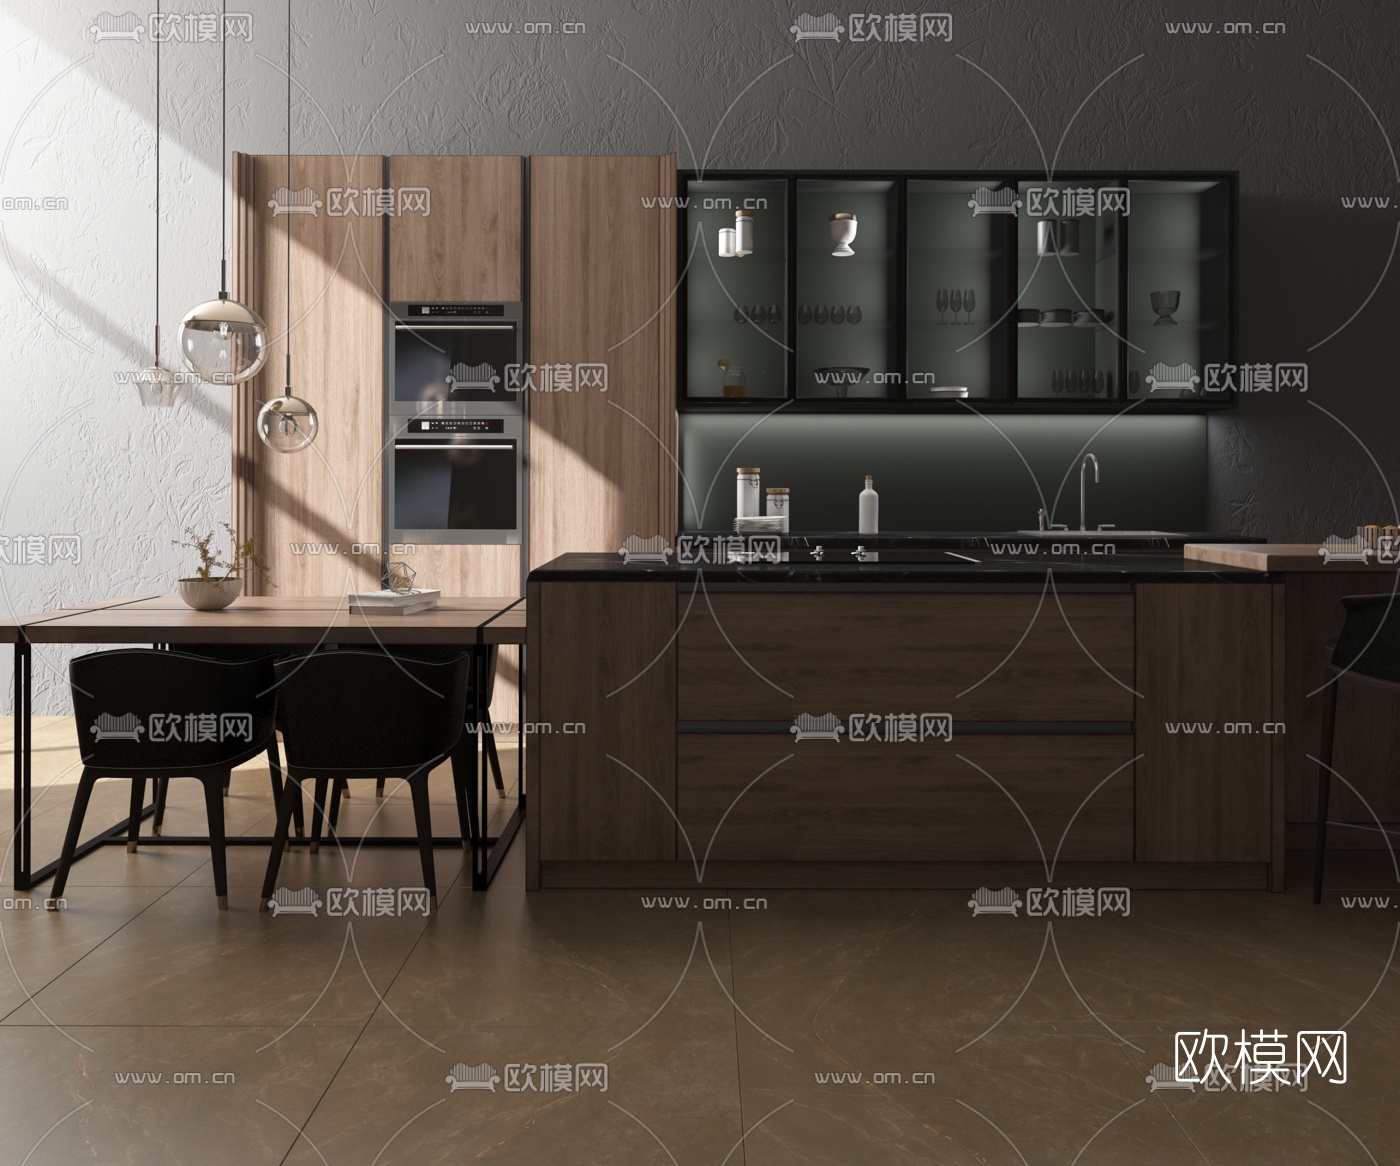 现代轻奢厨房- 建E网3D模型下载网